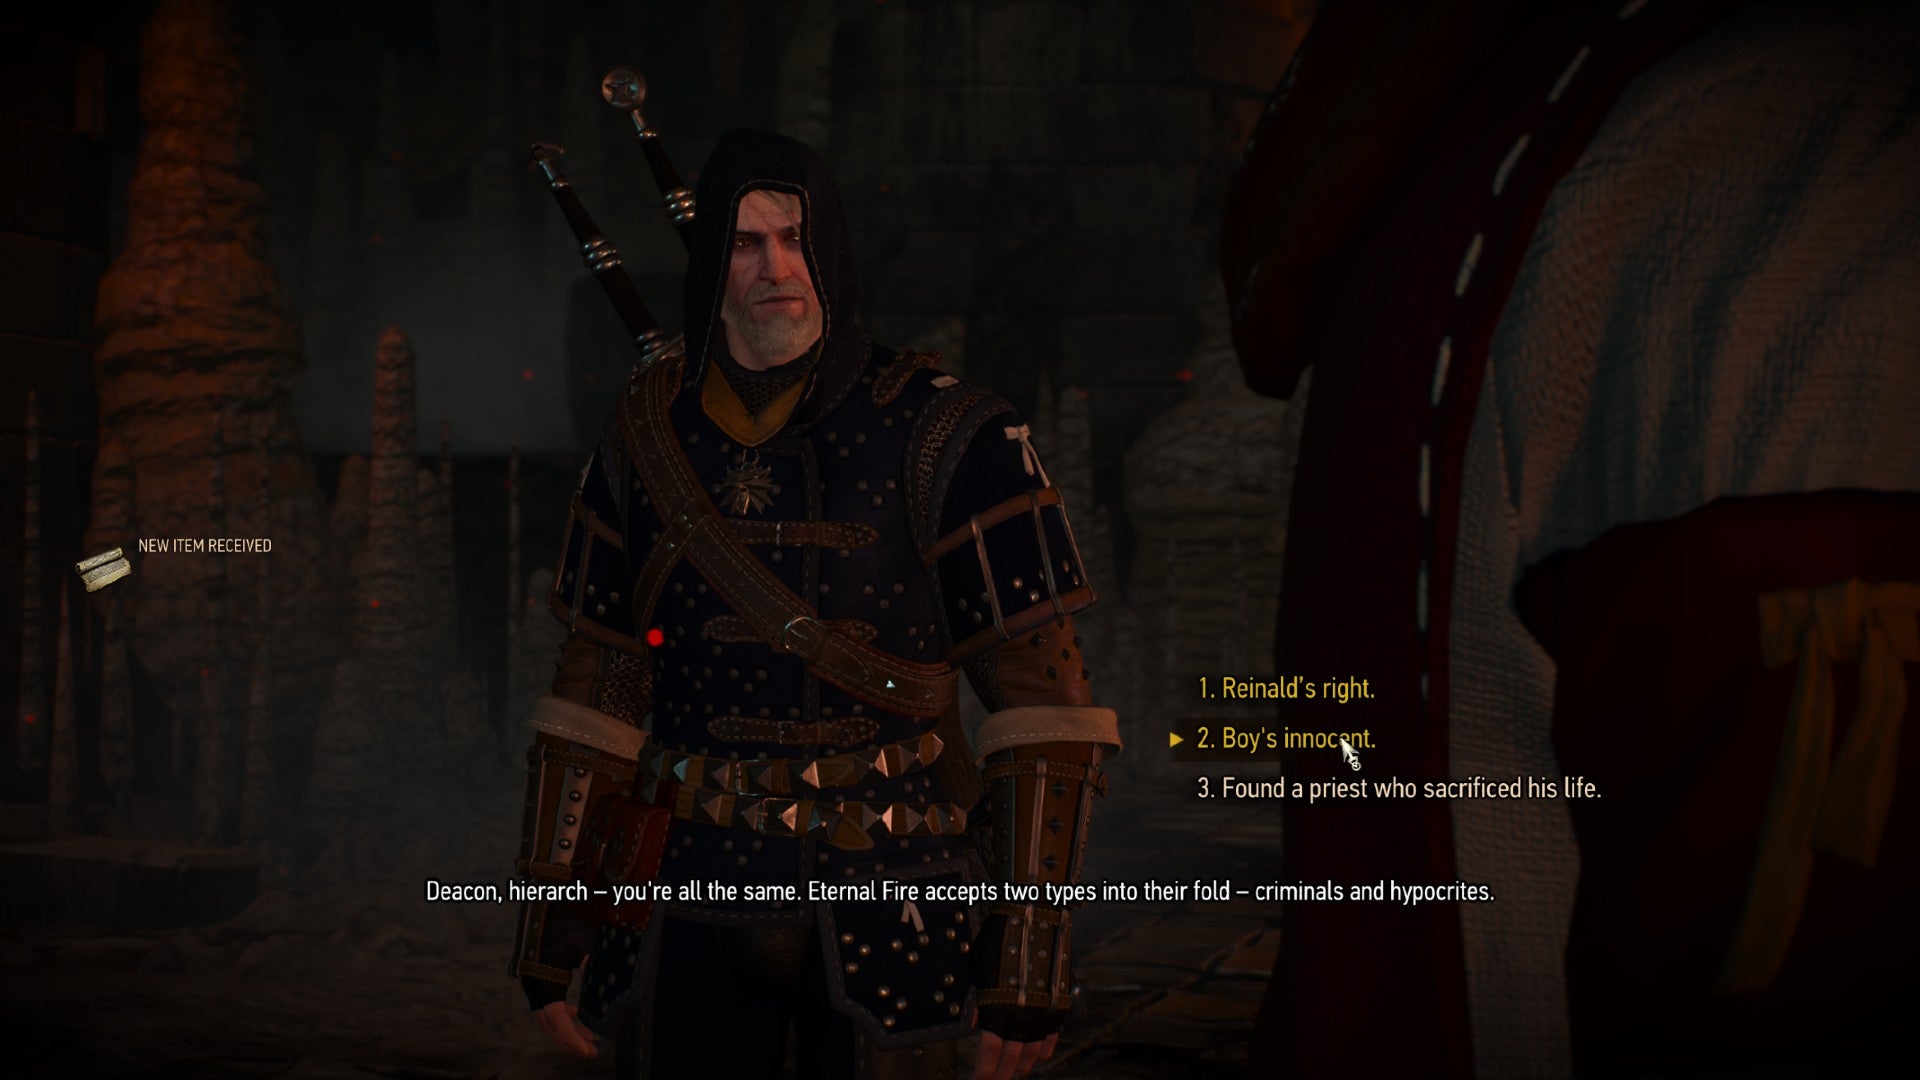 Captura de pantalla de Witcher 3 que muestra el "chico inocente" opción de diálogo.